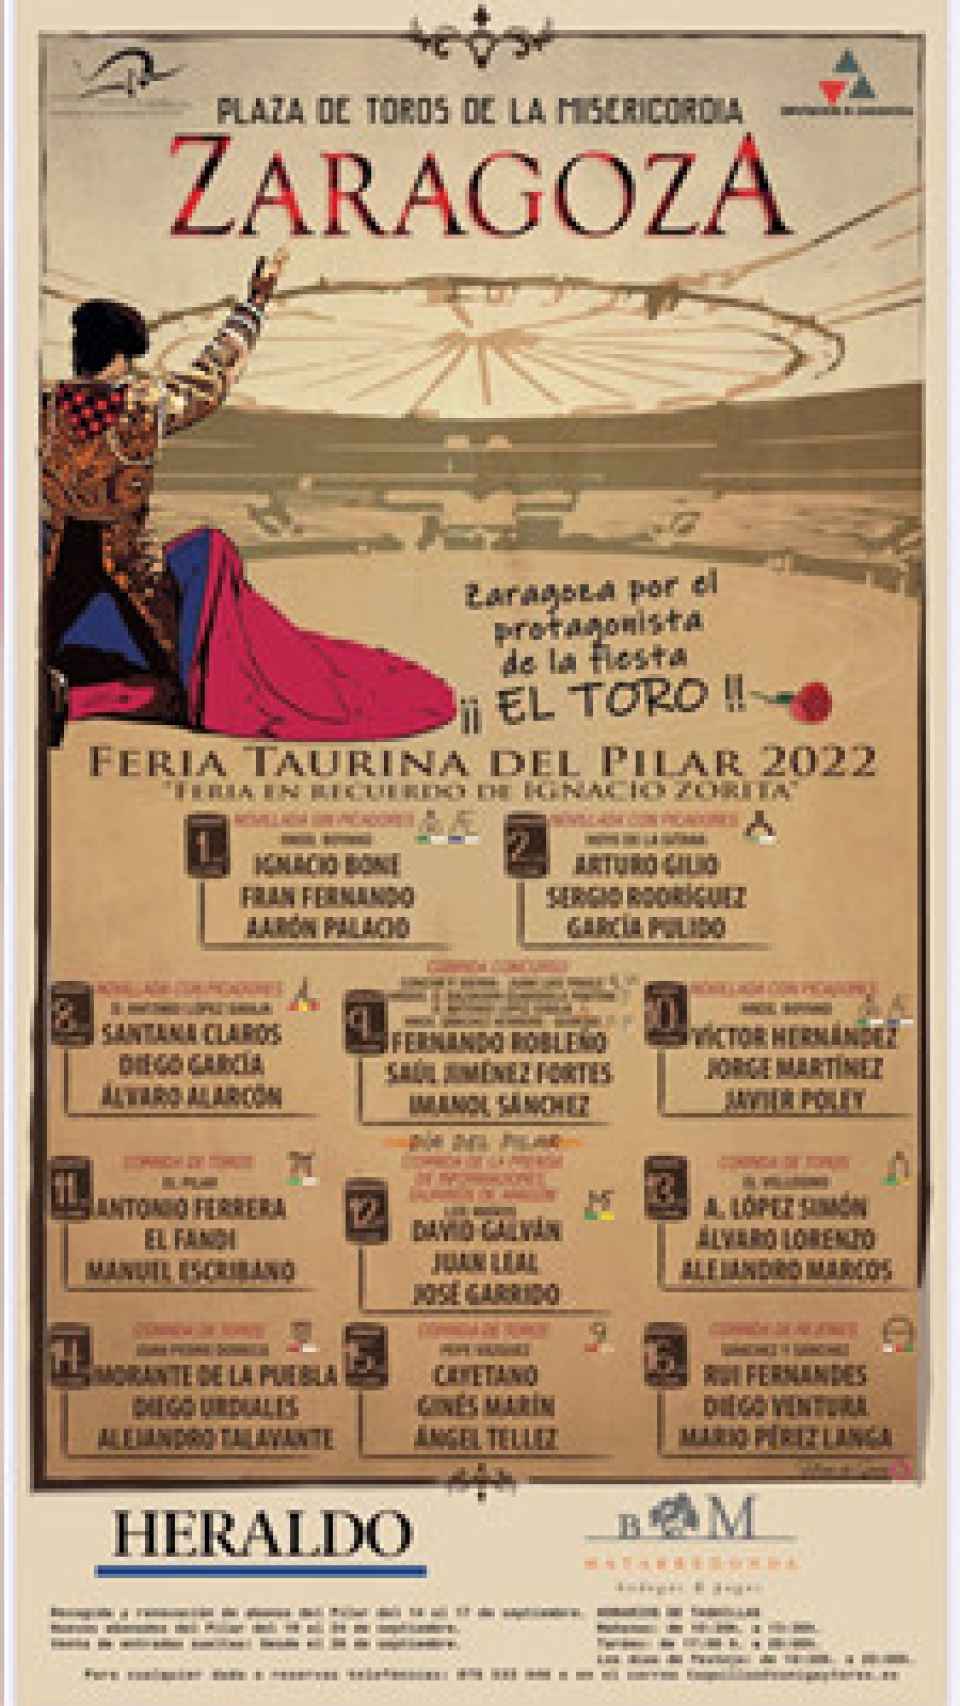 Feria taurina de Zaragoza